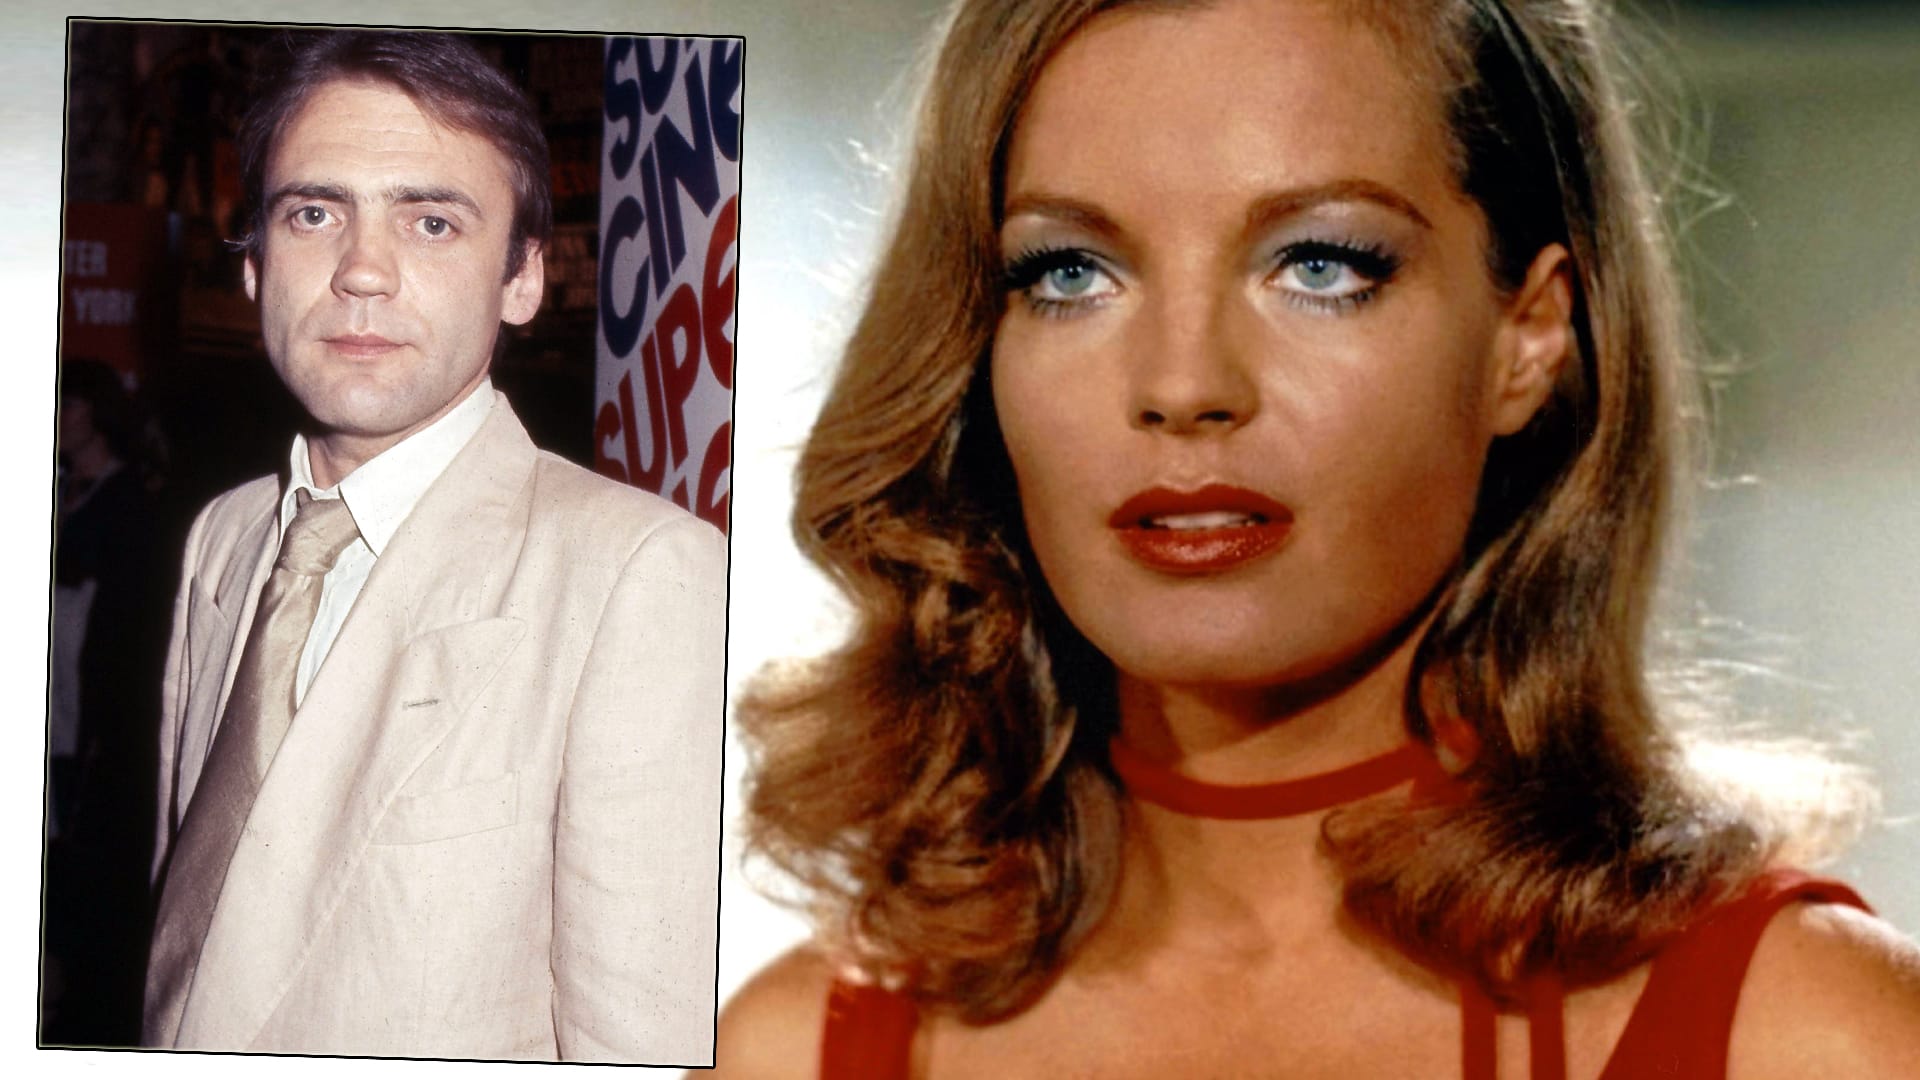 Anfang der 70er Jahre hatte die Schauspielkollegen Bruno Ganz ("Der Untergang") und Romy Schneider ("Sissi") eine leidenschaftliche Affäre miteinander, die Schneider beendete. "Sie hat mich verlassen.Sie war der Star", so Ganz.